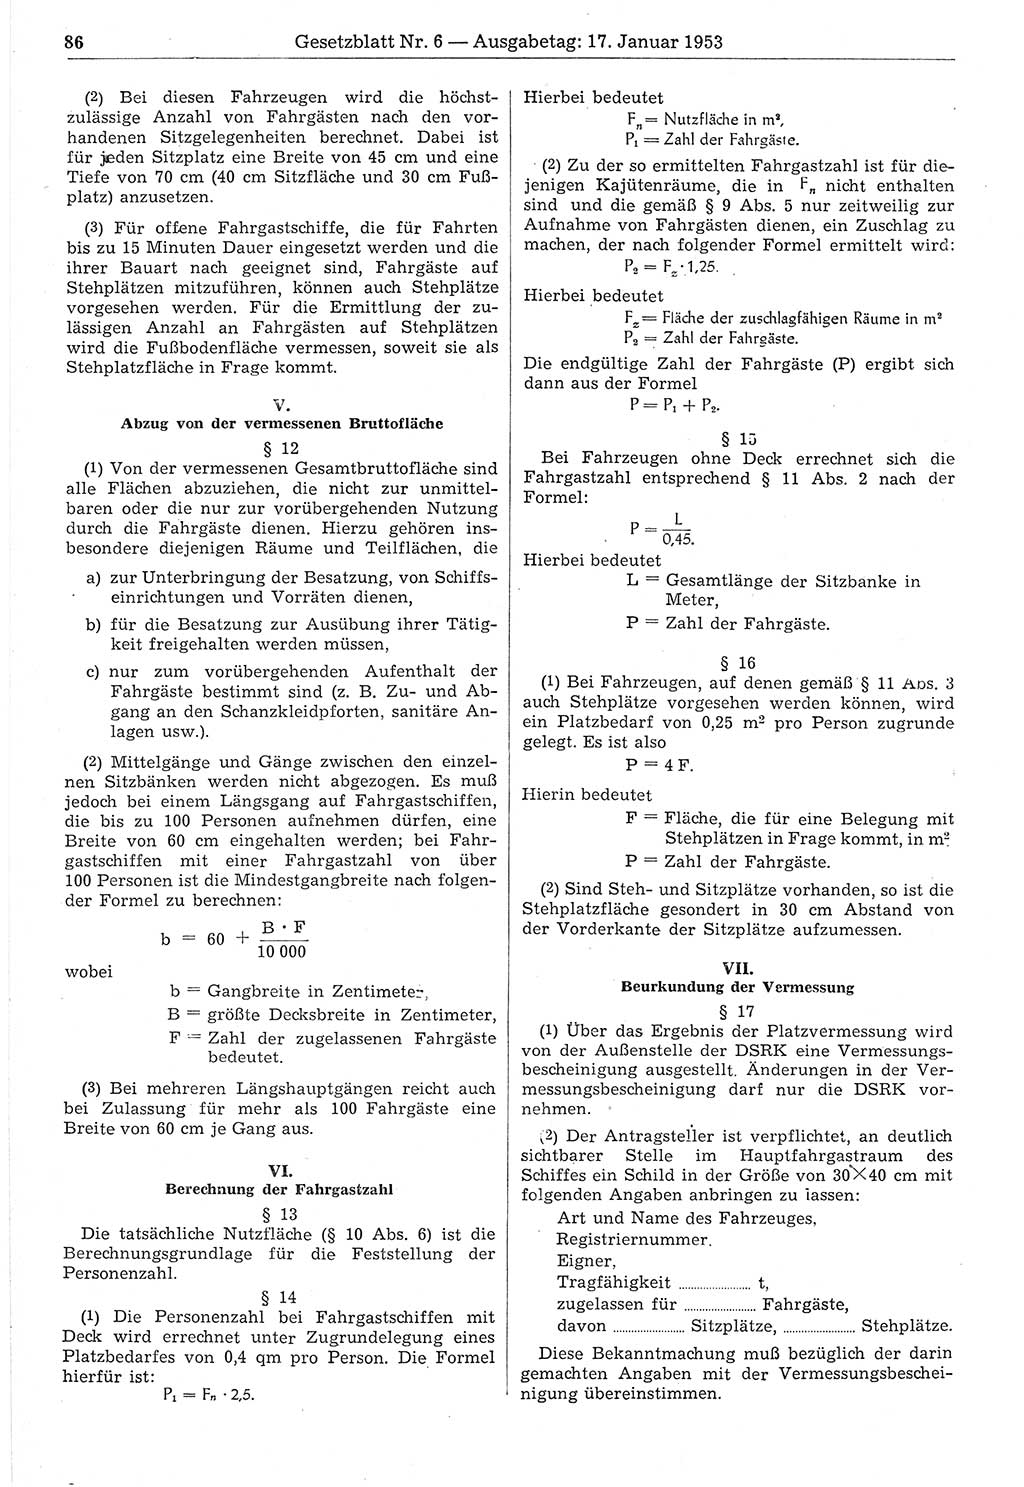 Gesetzblatt (GBl.) der Deutschen Demokratischen Republik (DDR) 1953, Seite 86 (GBl. DDR 1953, S. 86)